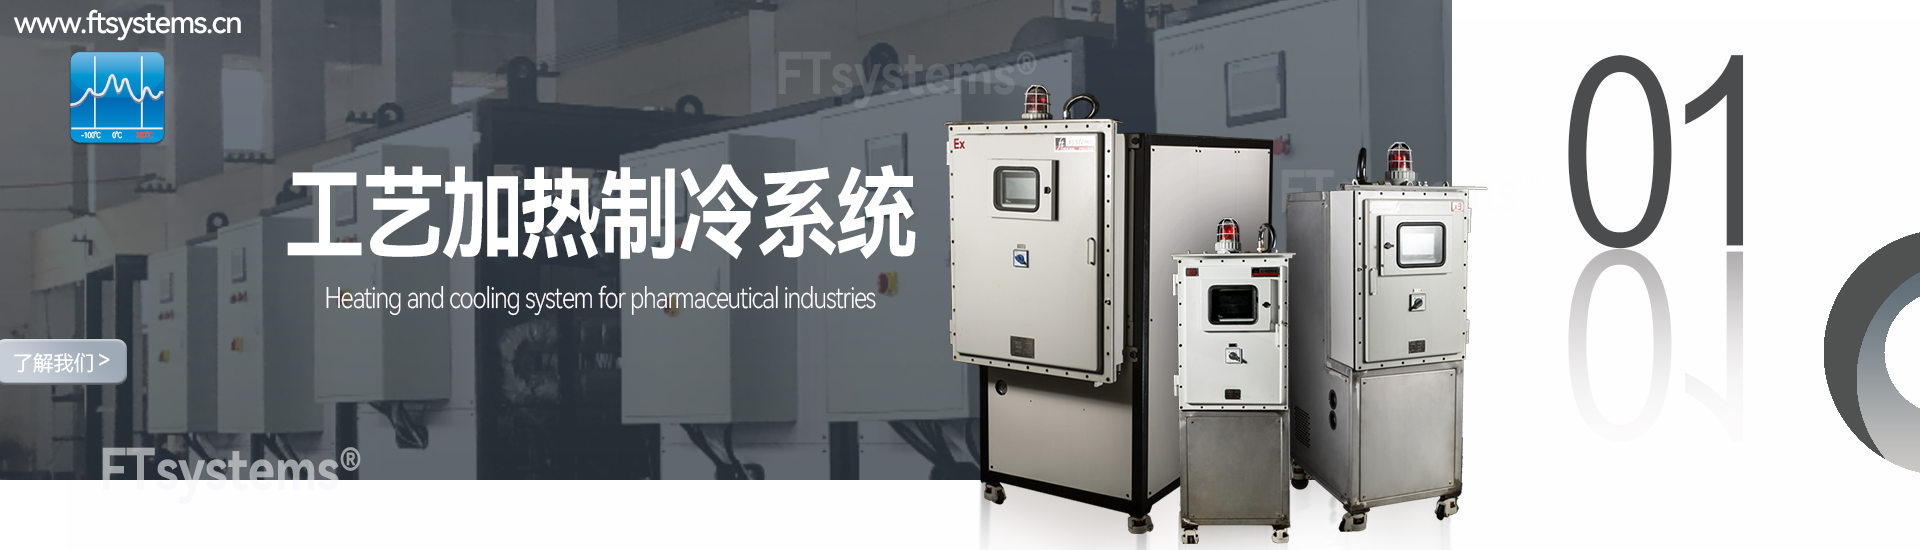 上海弗泰流体温控技术有限公司